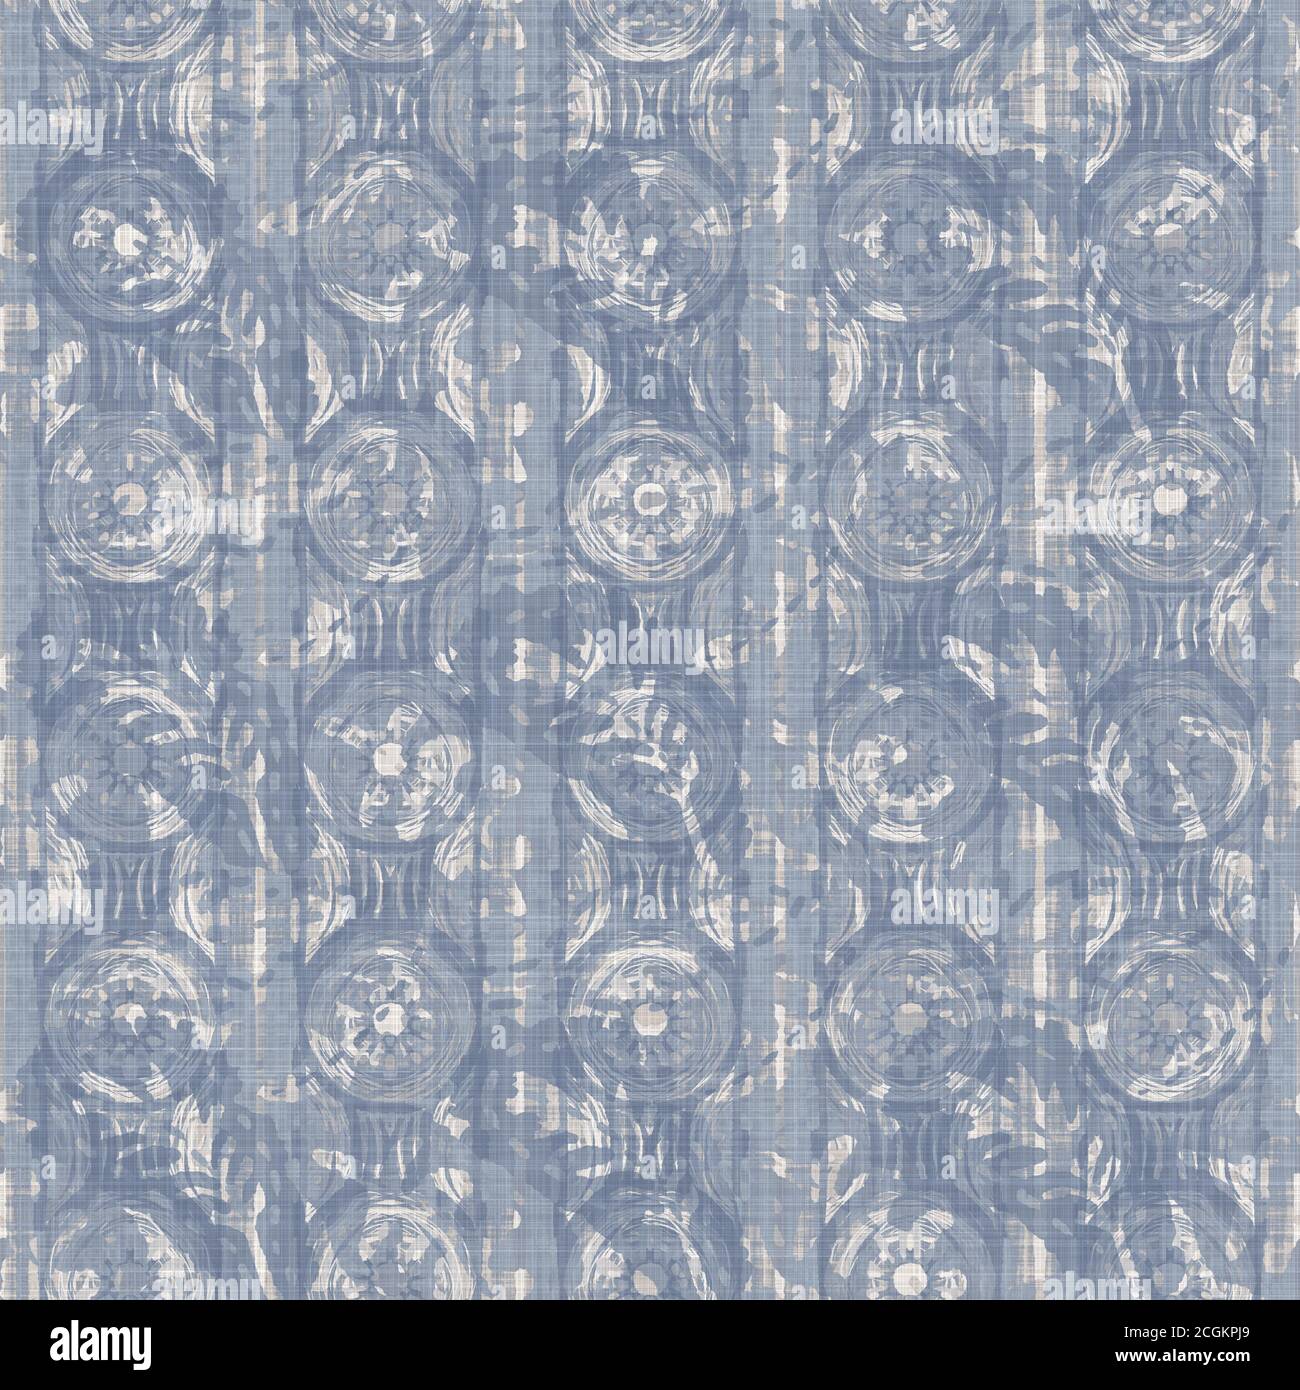 Sin costuras francés casa de campo ropa de verano bloque de impresión de  fondo. Provence azul lino gris textura de patrón rústico. Un viejo lino  tejido desenfocado en un estilo elegante y